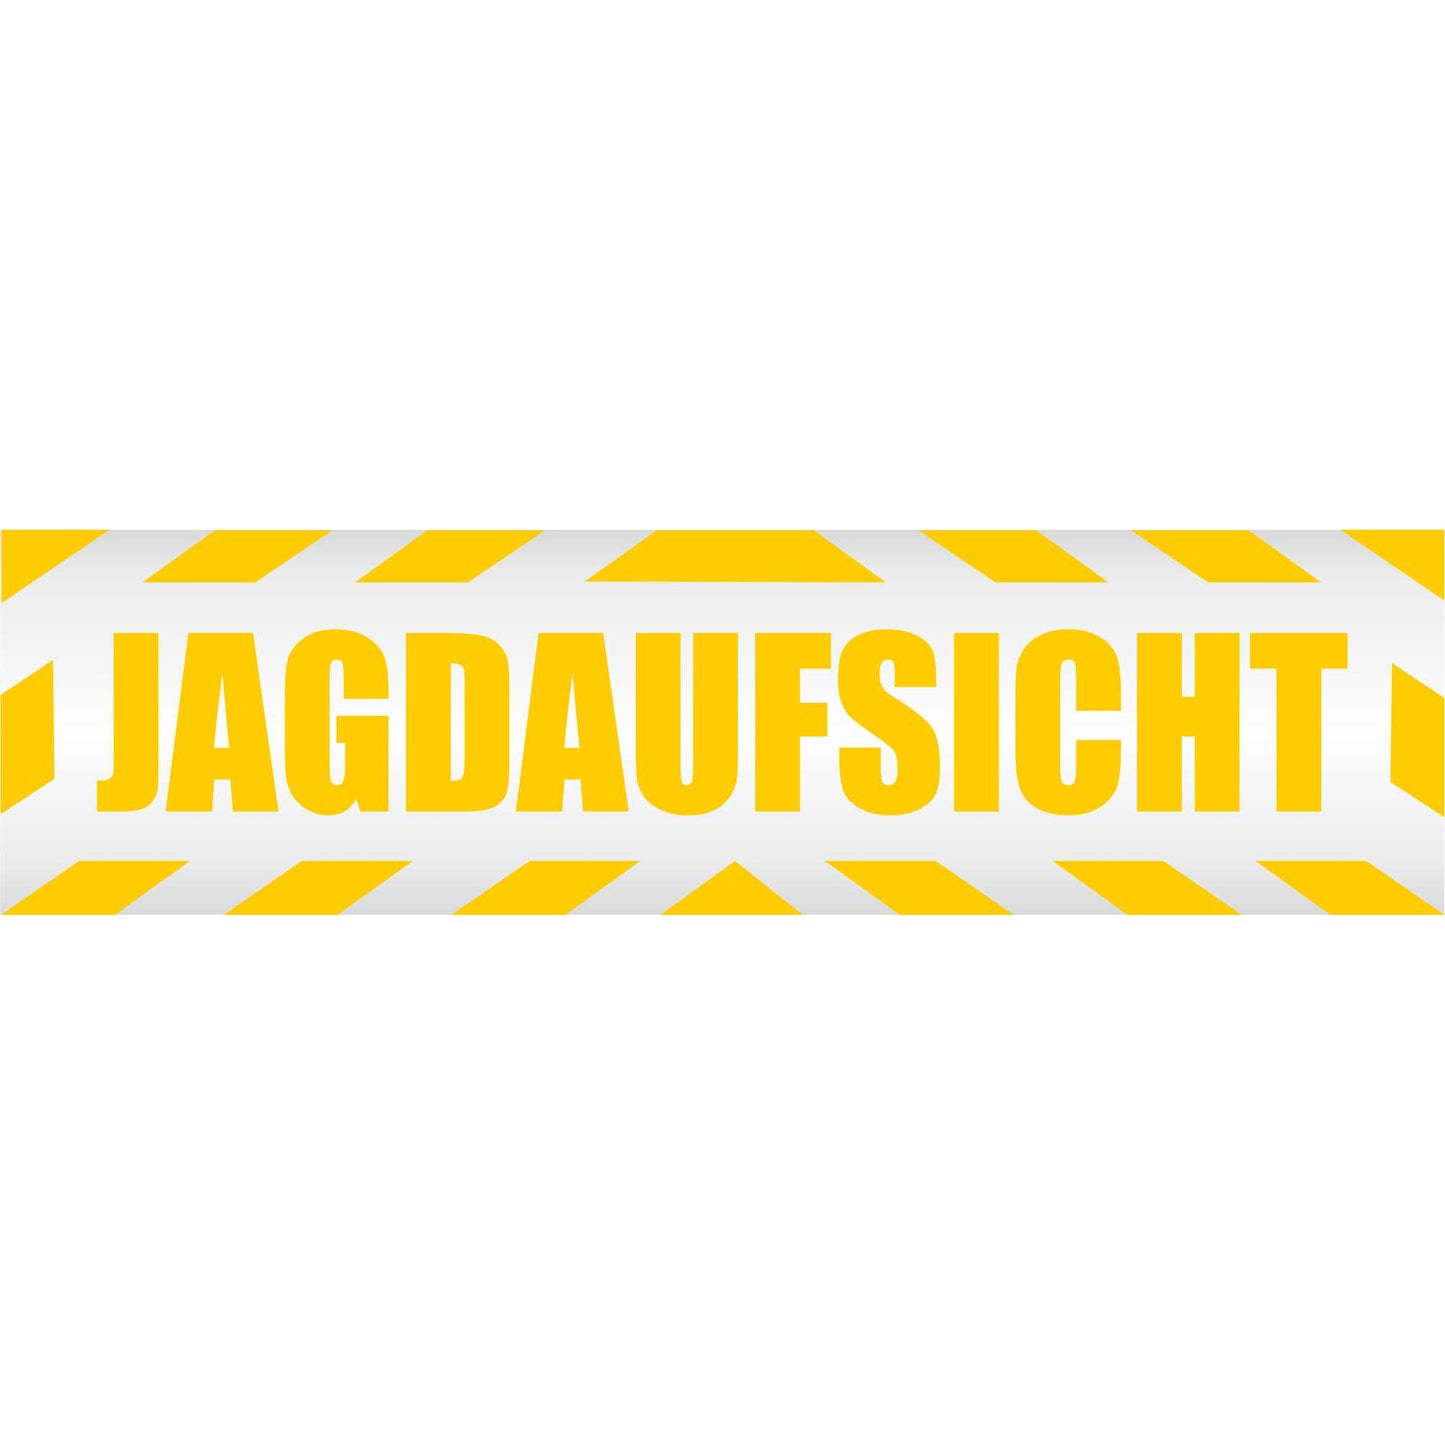 Magnetschild - Jagdaufsicht - Magnetfolie für Auto - LKW - Truck - Baustelle - Firma